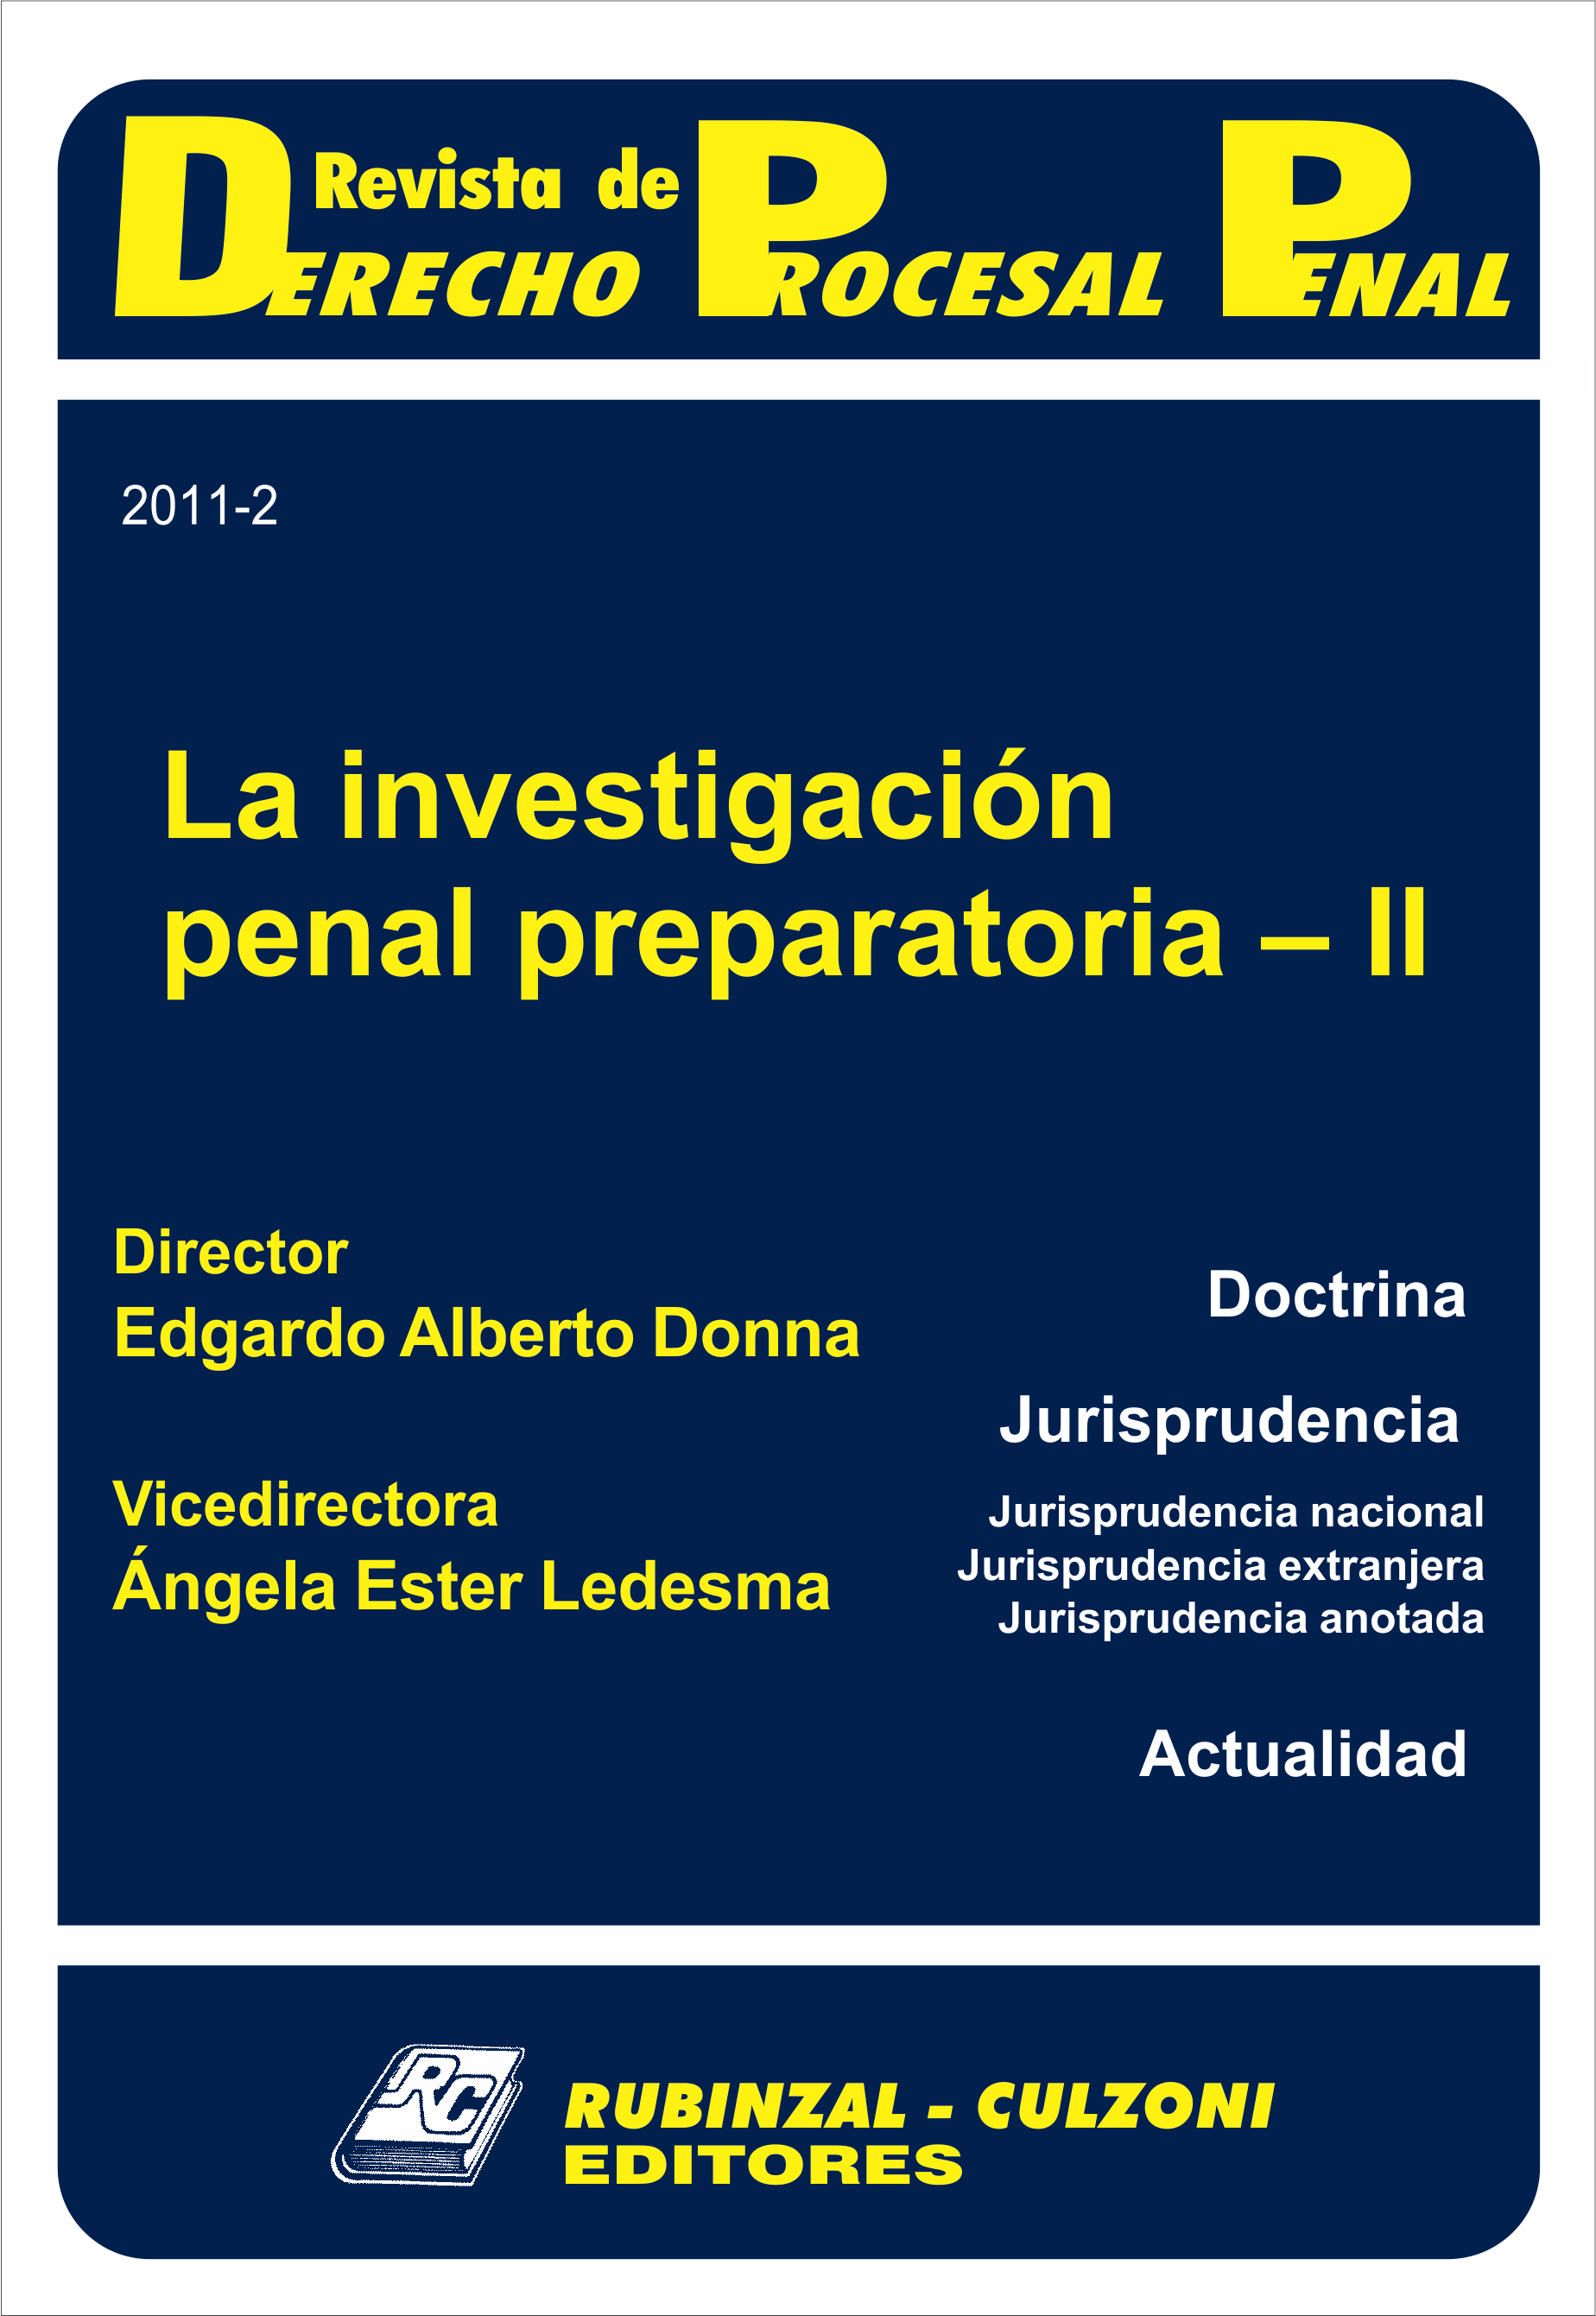 Revista de Derecho Procesal Penal - La investigación penal preparatoria - II